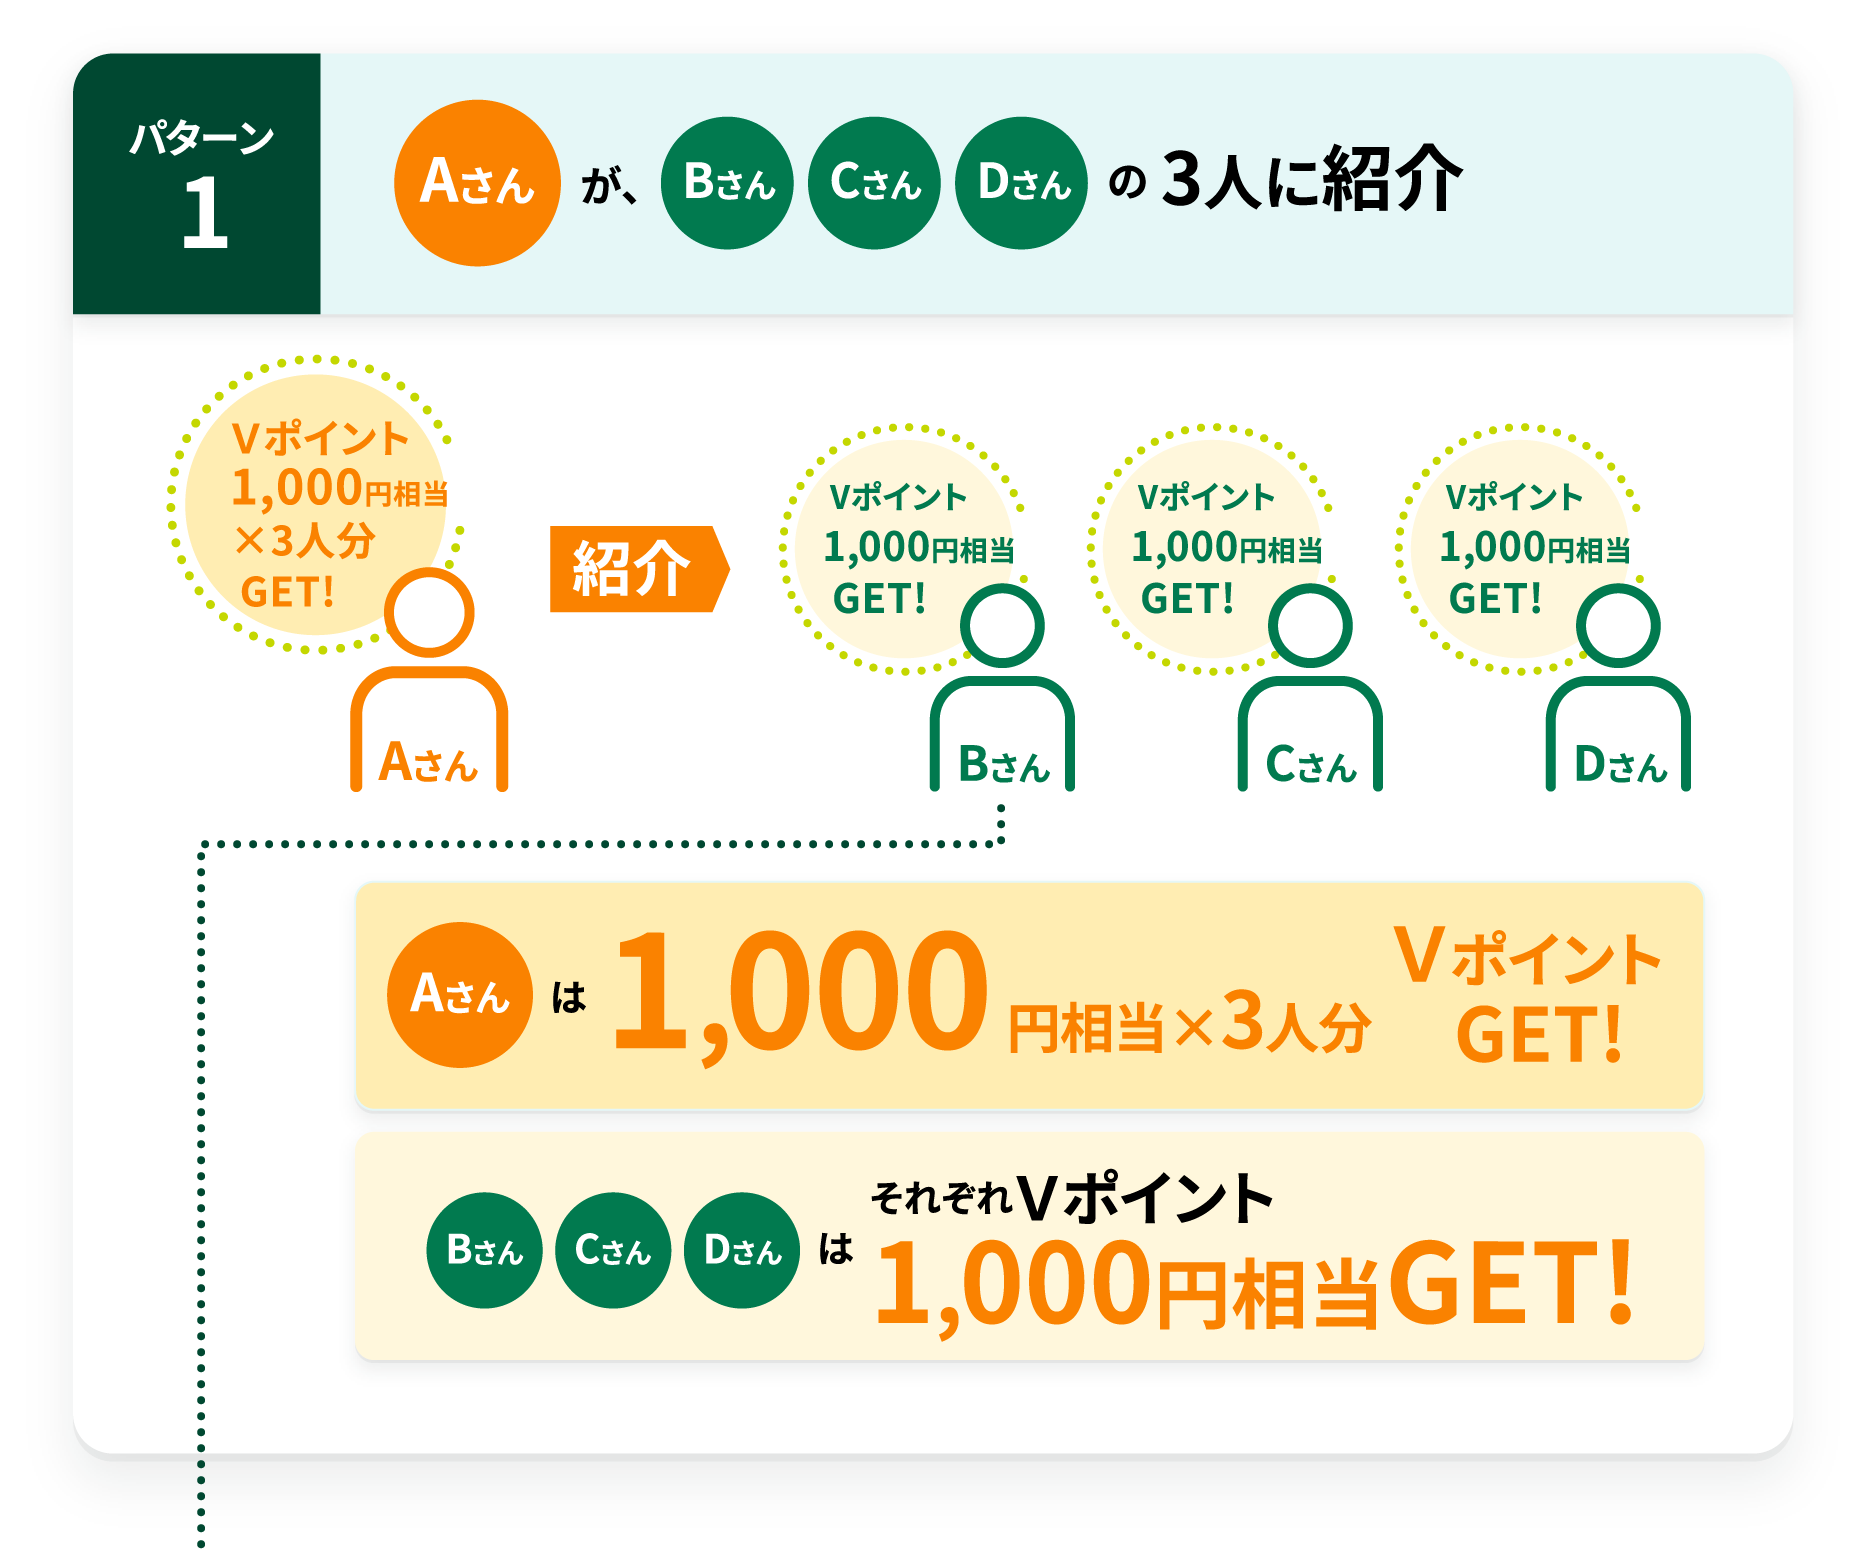 パターン1 Aさんが、BさんCさんDさんの3人に紹介 Aさんは1,000円相当×3人分ＶポイントGET!BさんCさんDさんはそれぞれＶポイント1,000円相当GET!